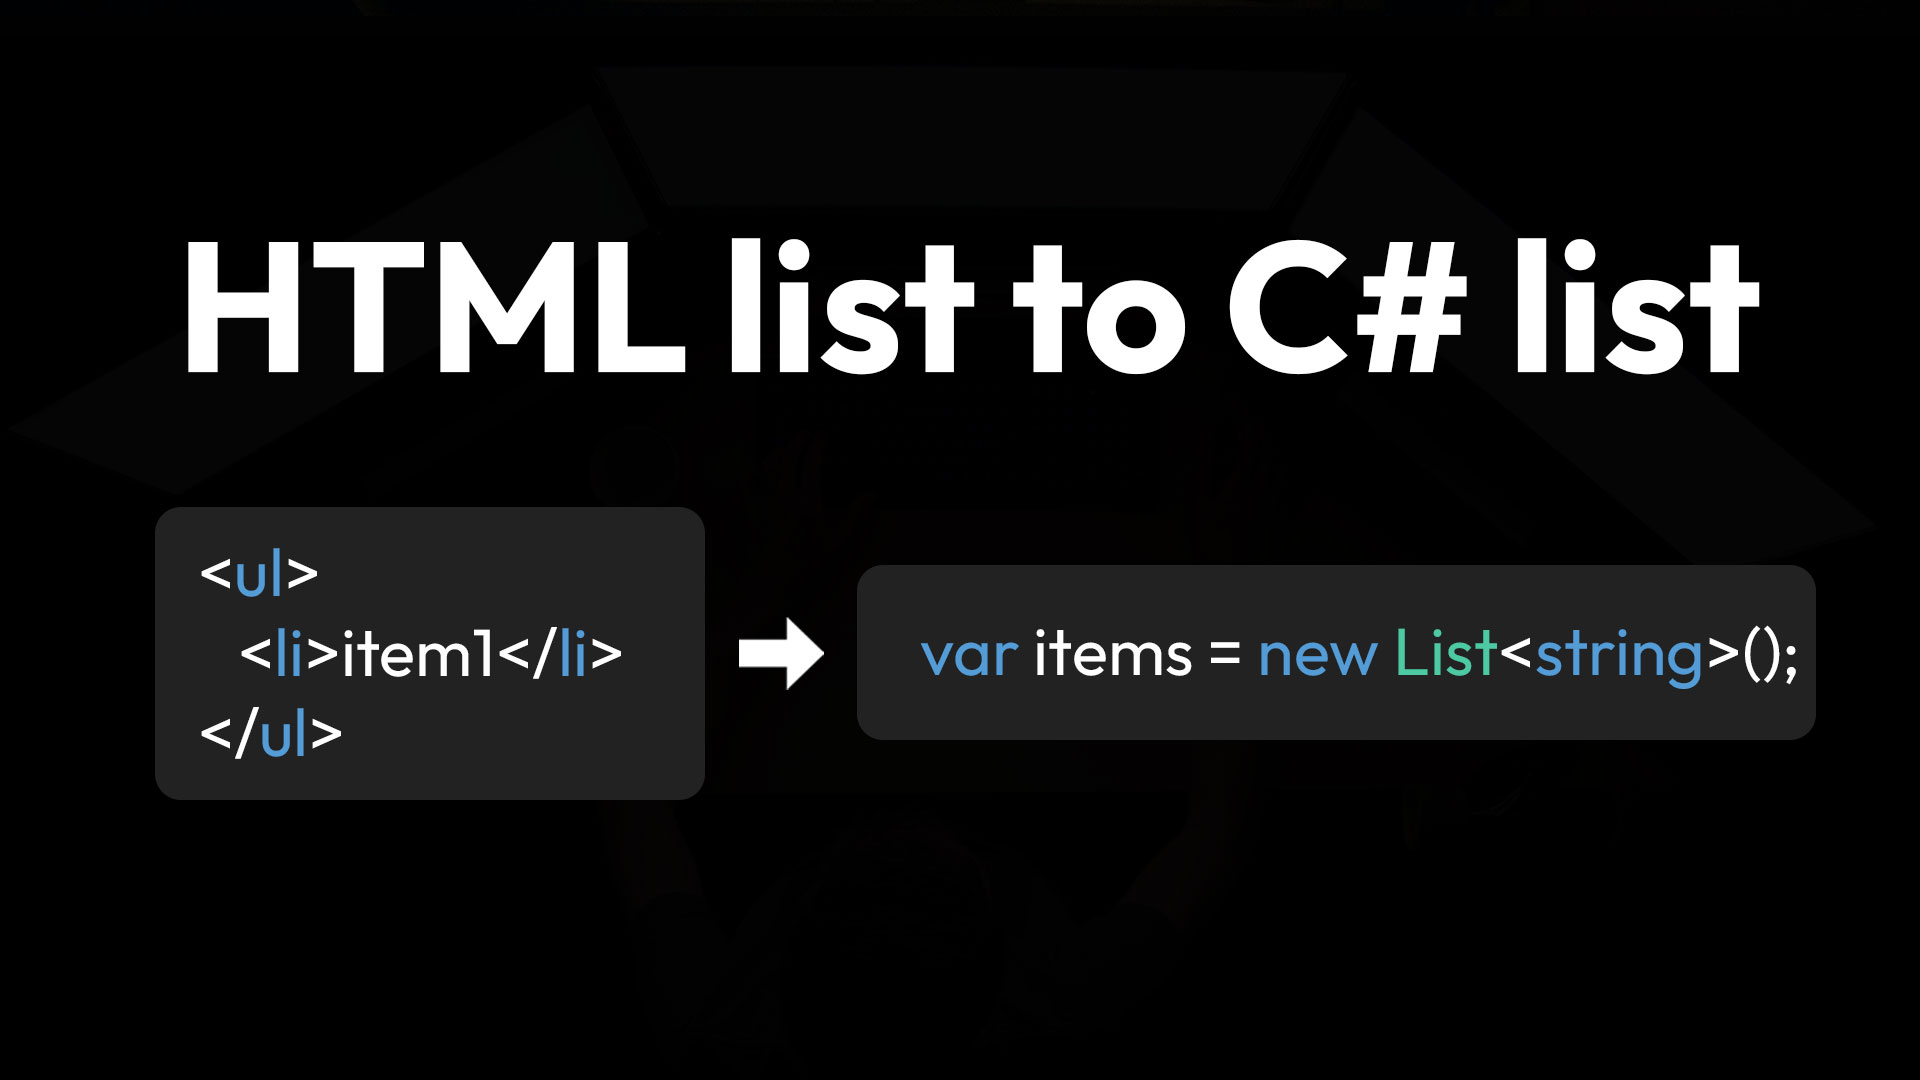 Convert HTML list into a C# list